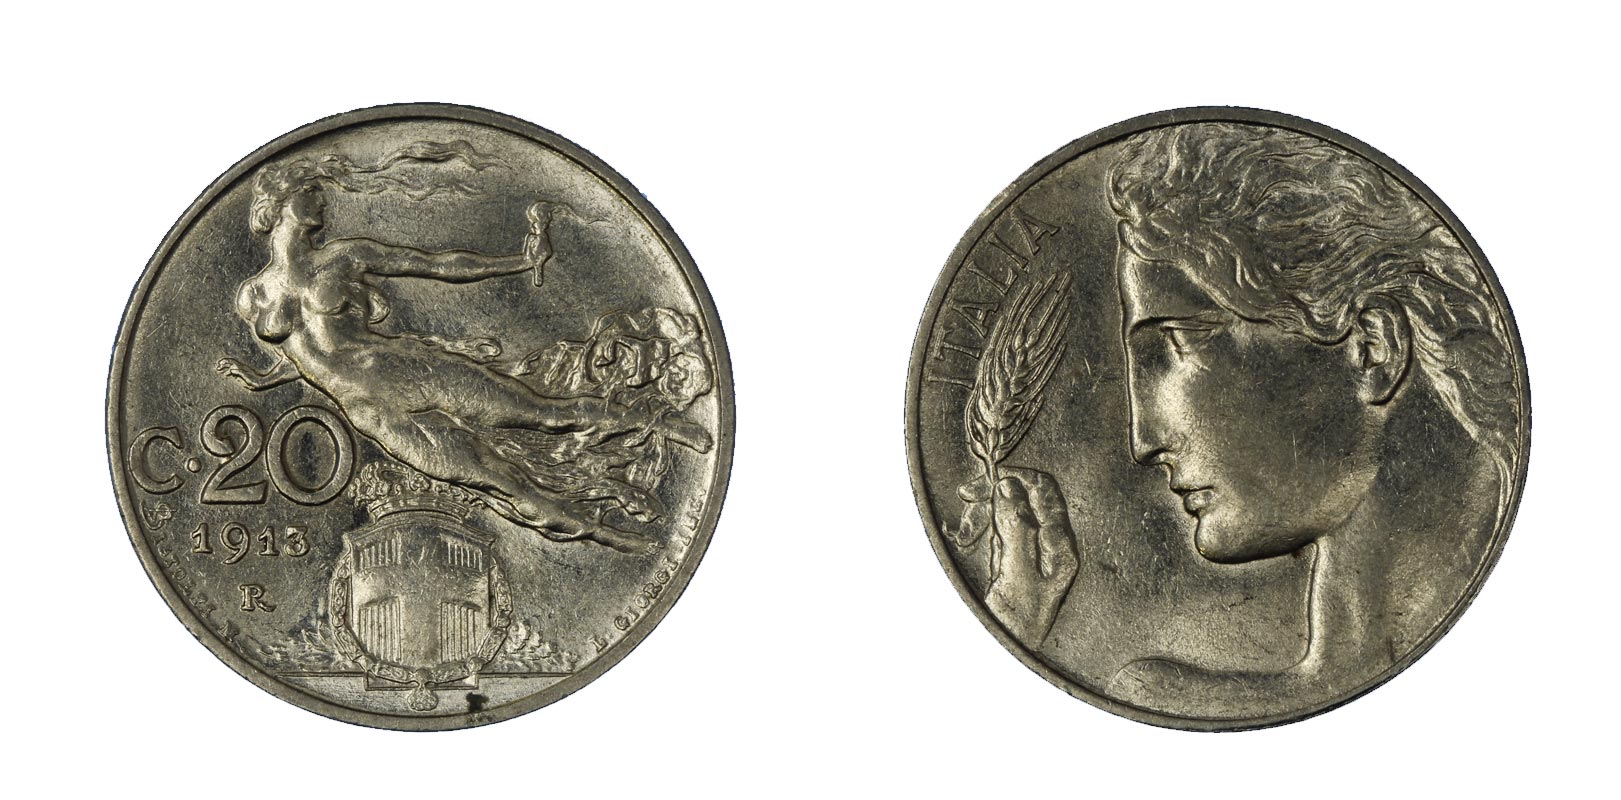 20 centesimi Libert Librata zecca di Roma